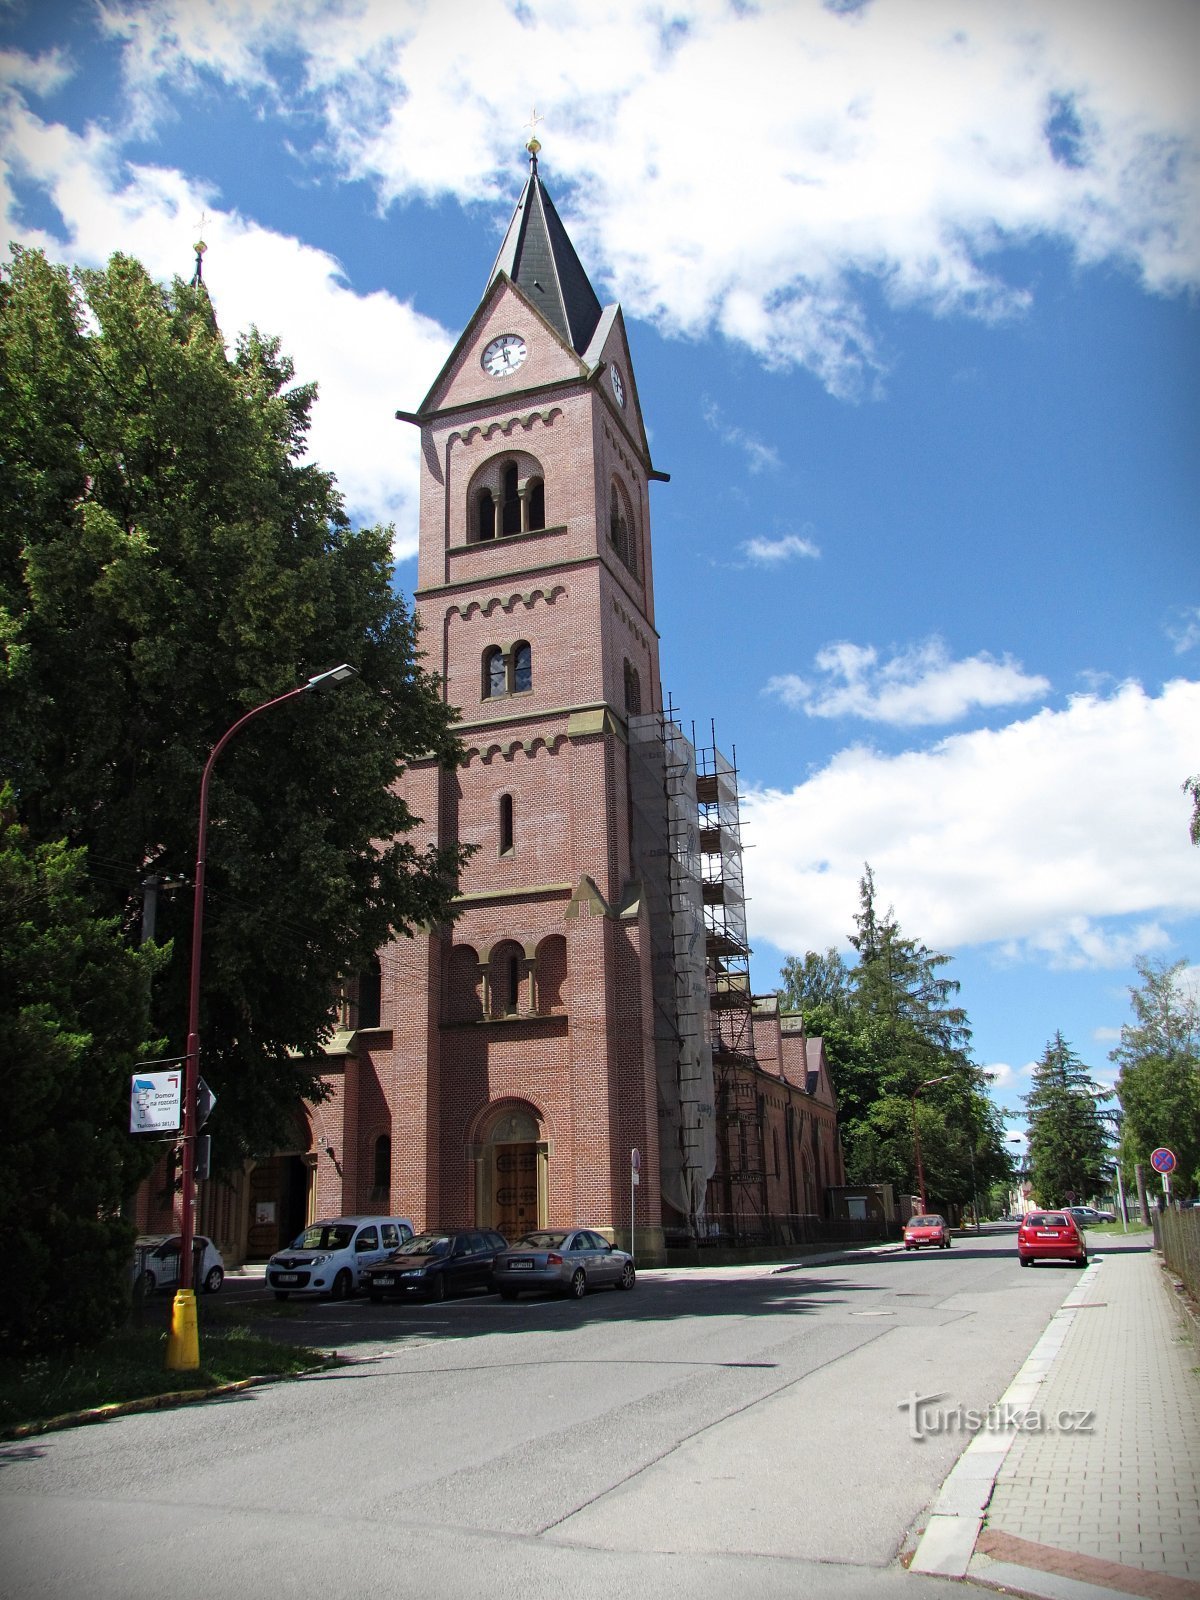 Svitava-kerk van St. Joseph